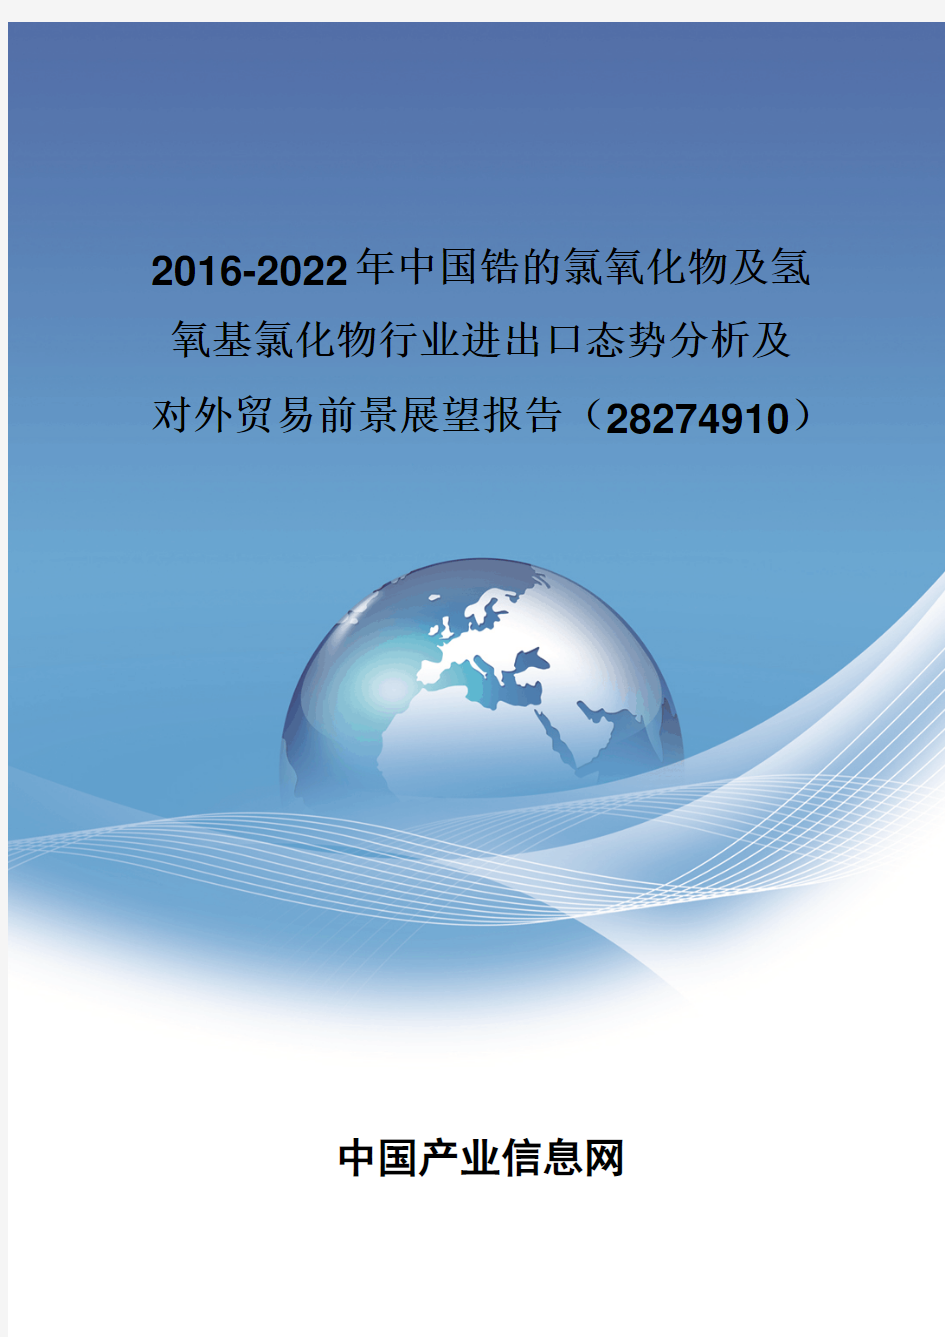 2016-2022年中国锆的氯氧化物及氢氧基氯化物行业进出口态势分析报告(28274910)